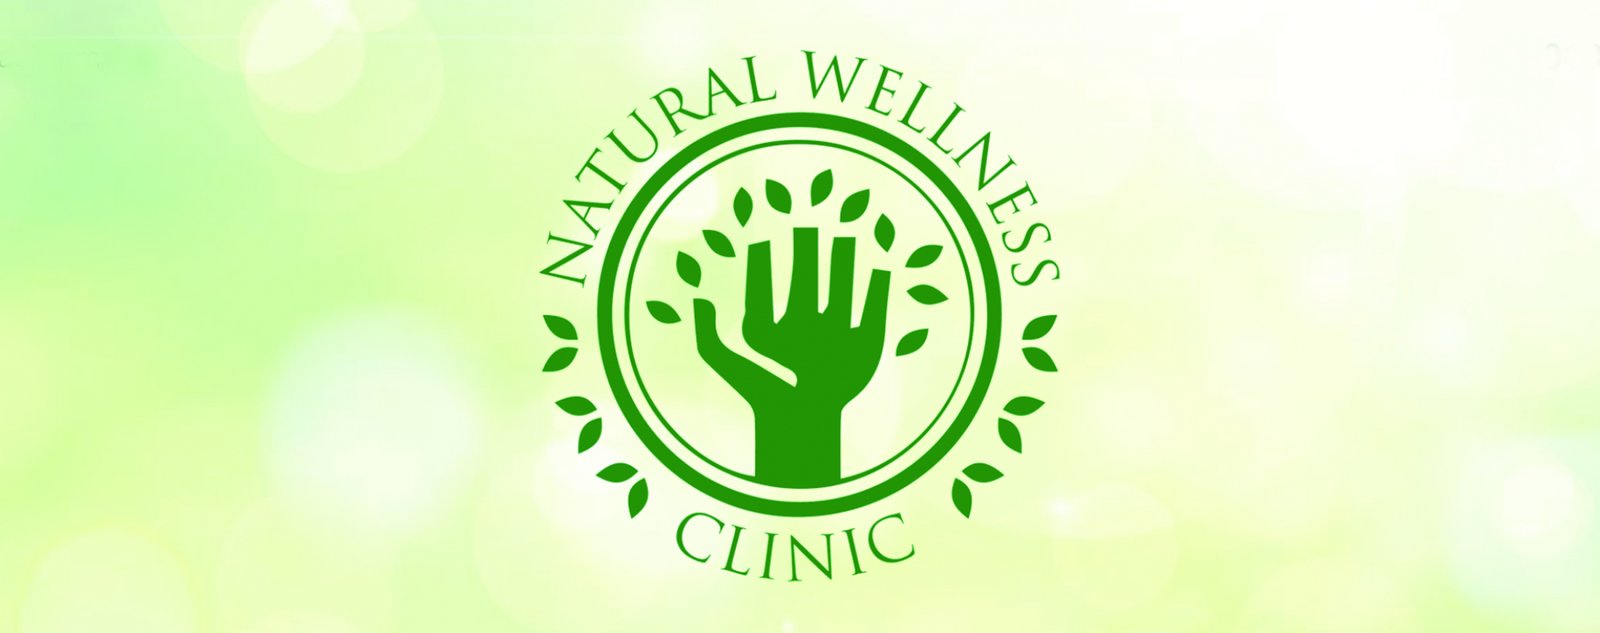 Signage Design for Natural Wellness